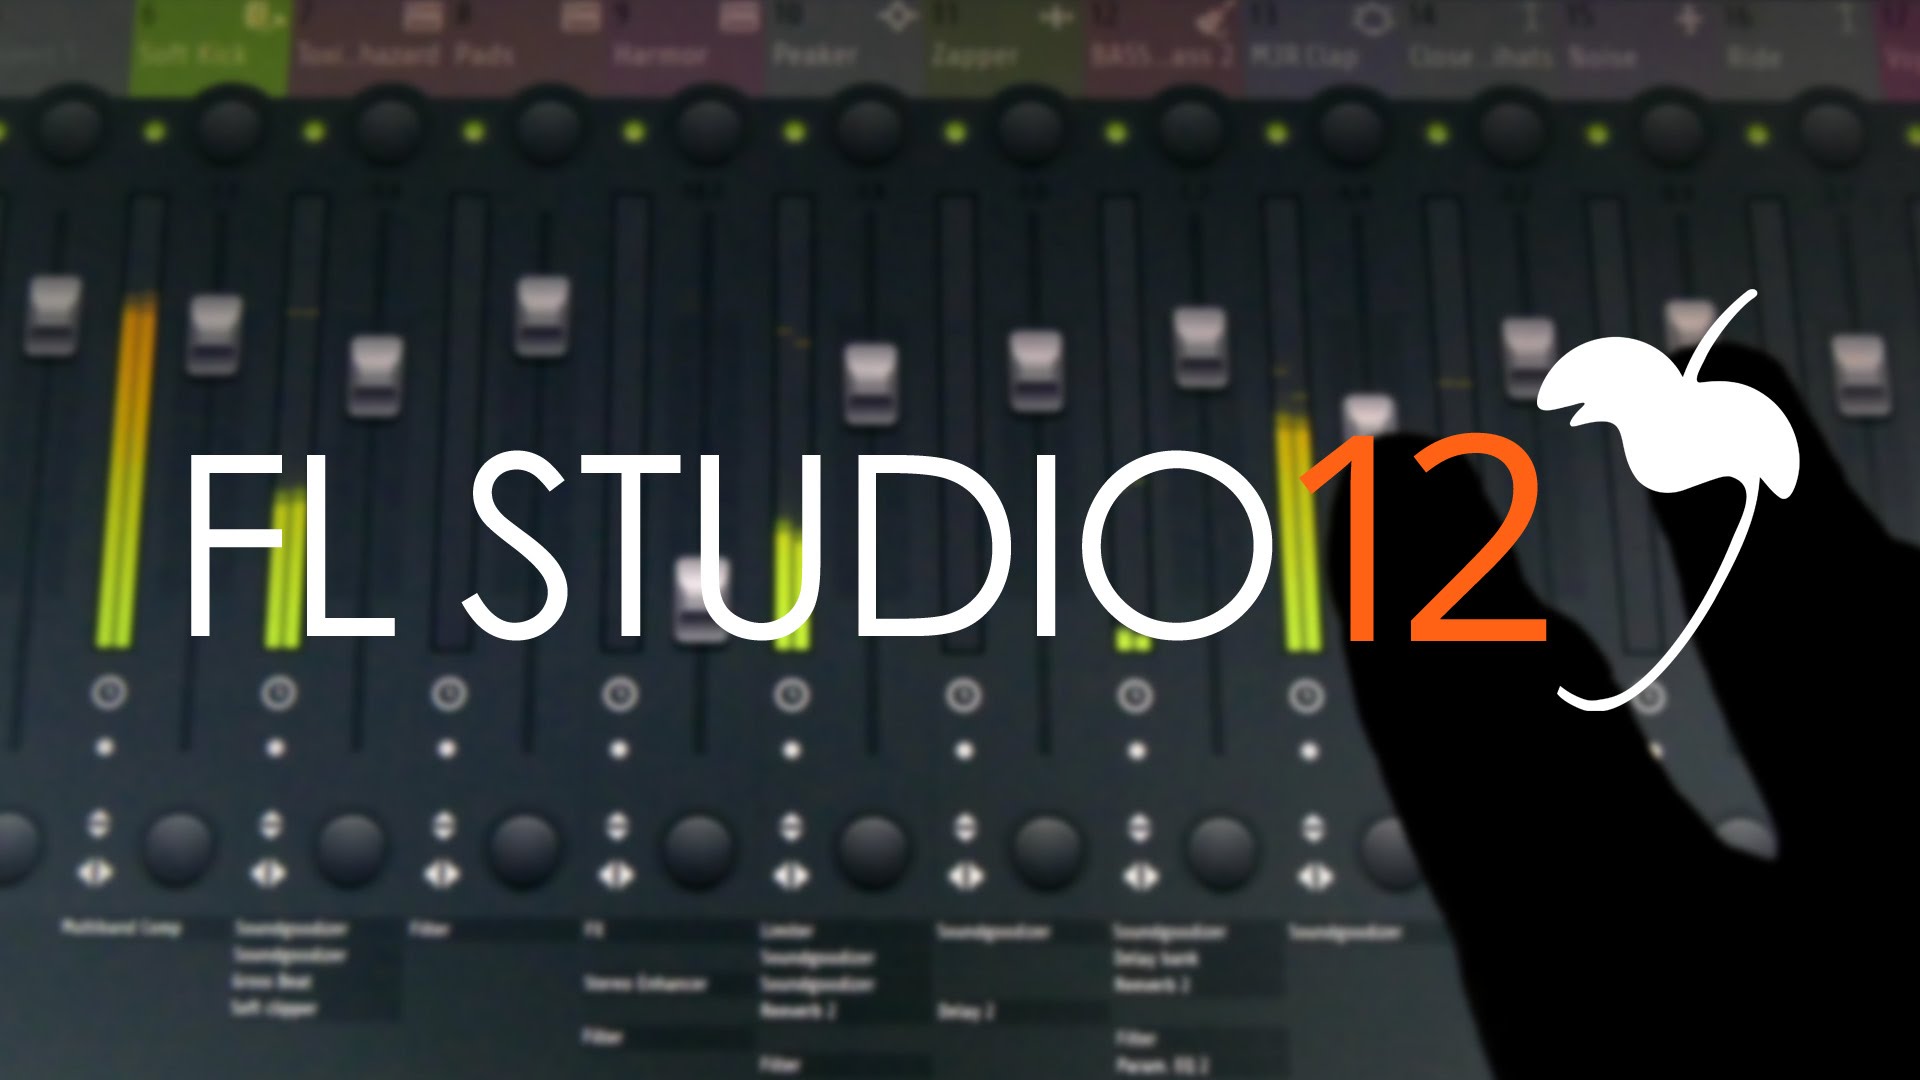 FL Studio 12, renovación en Image-Line